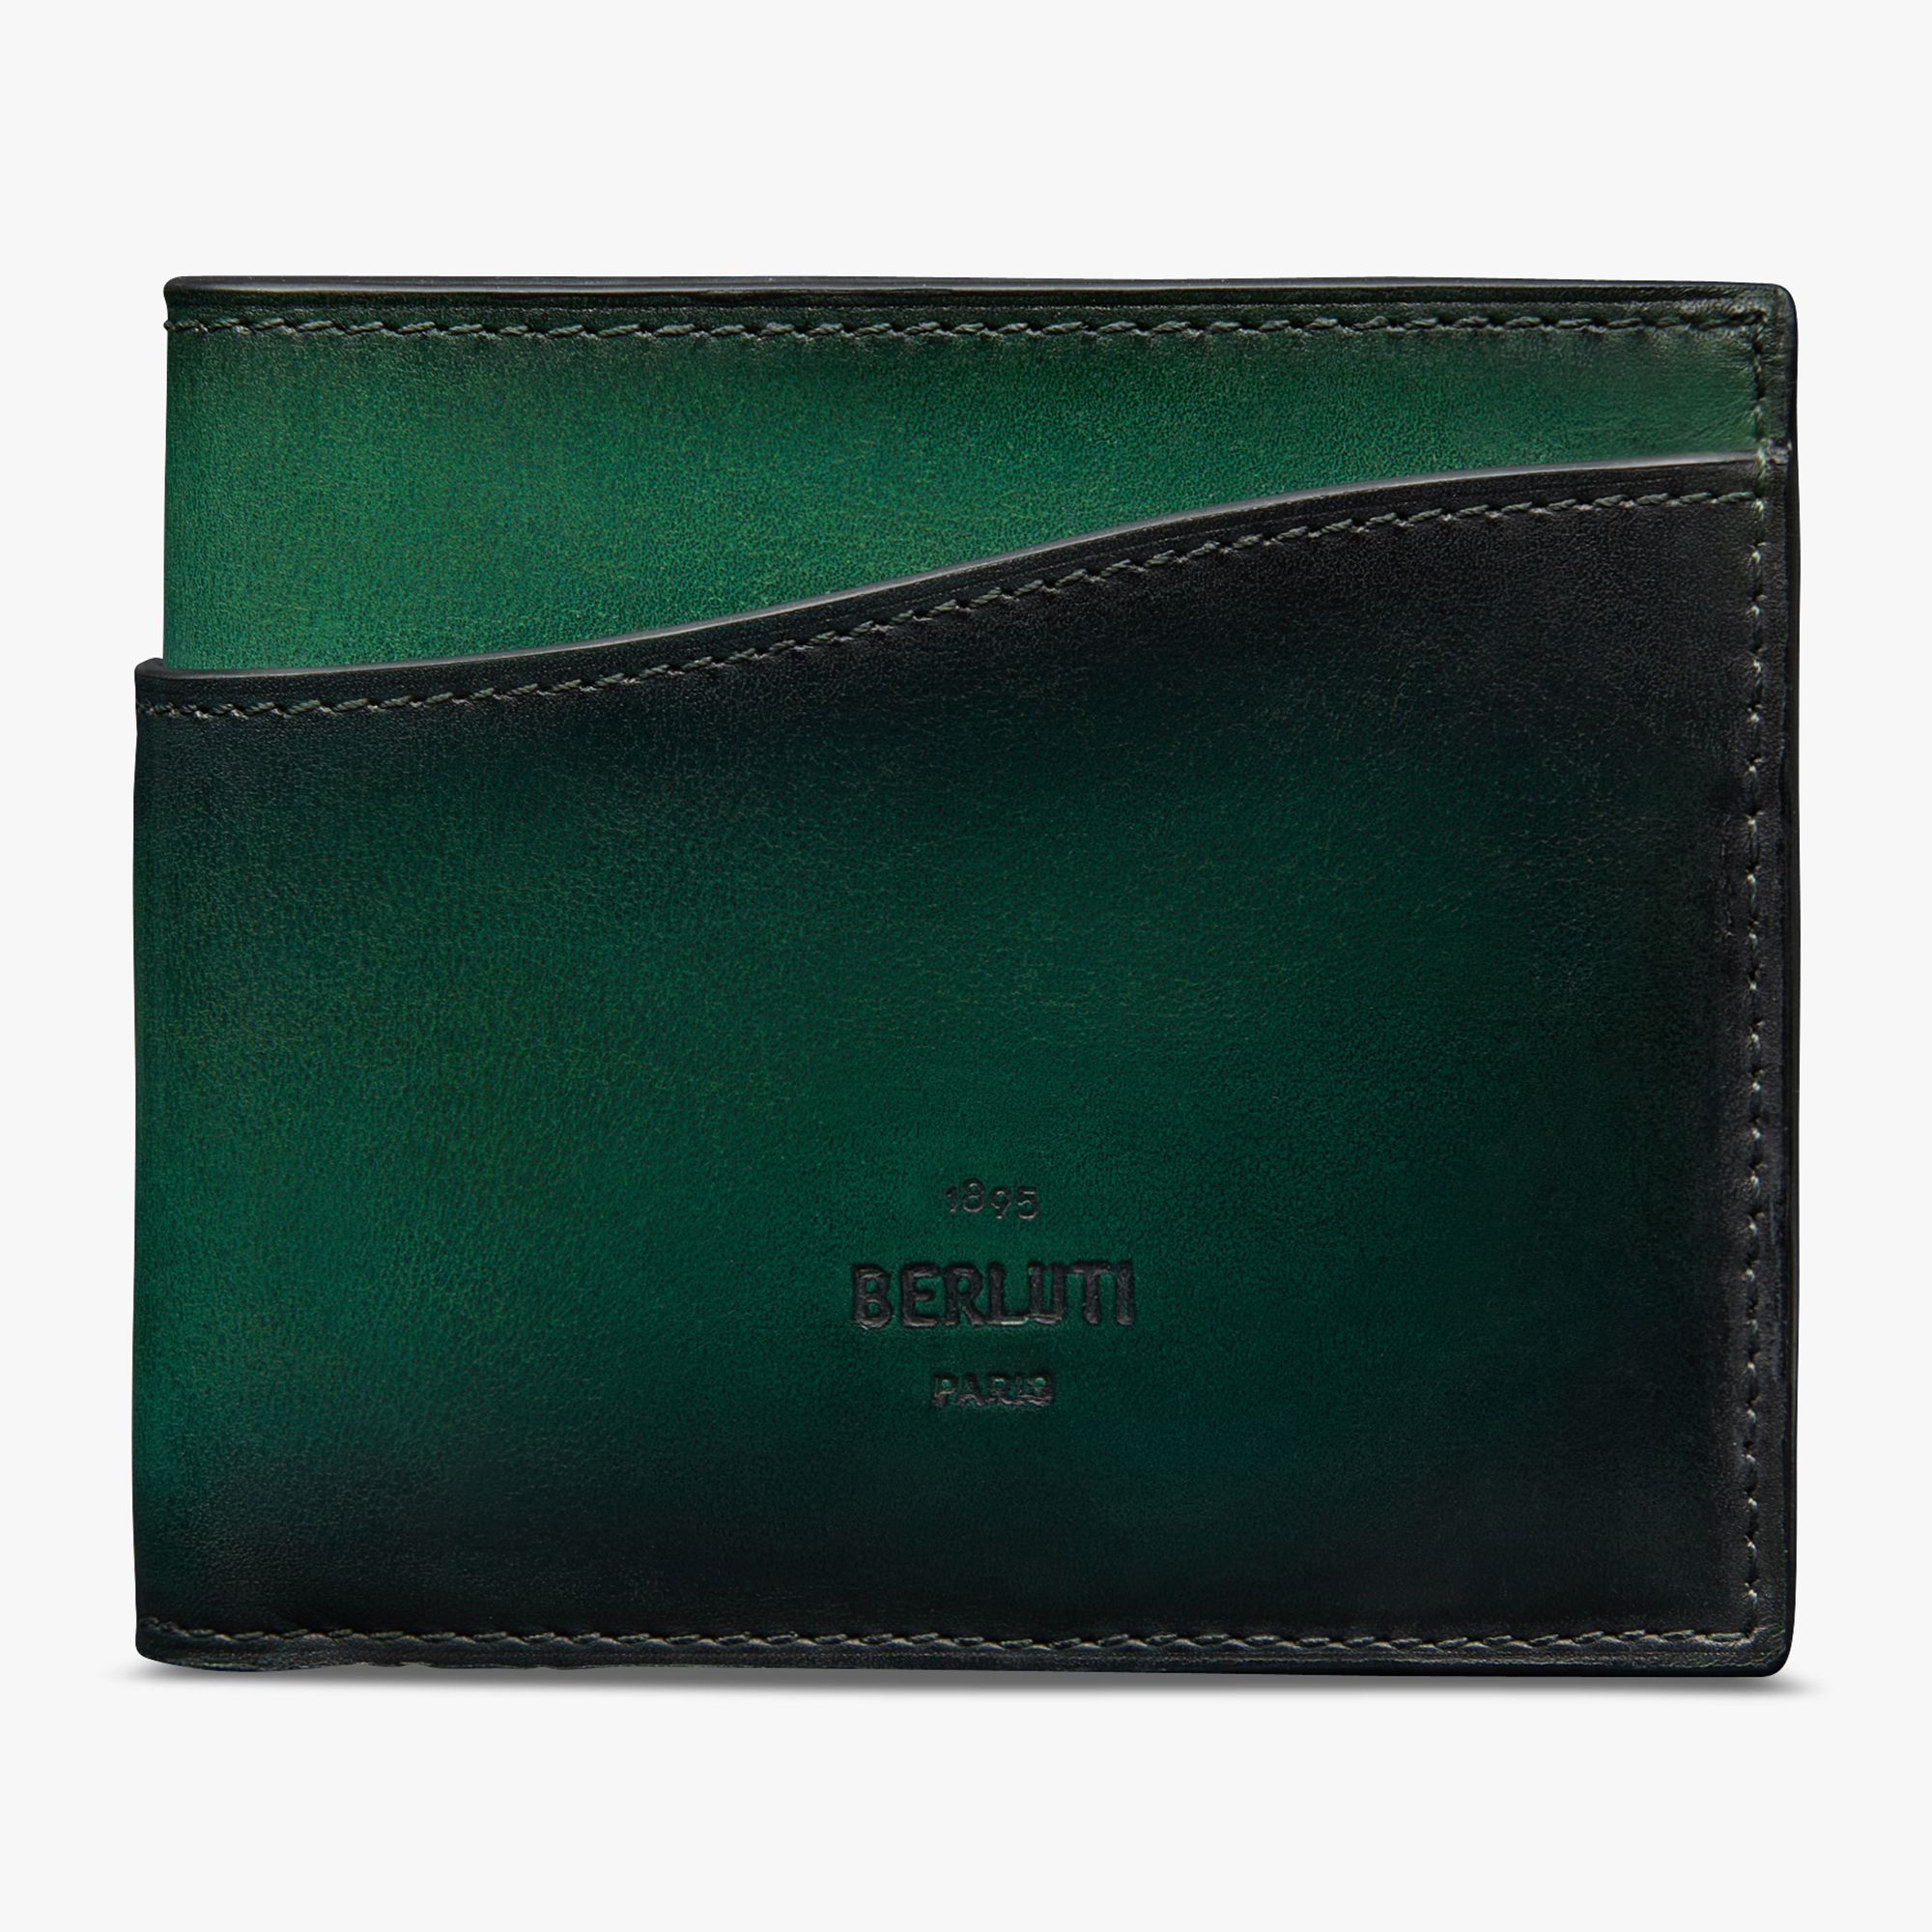 Makore Slim Leather Wallet, BEETLE GREEN, hi-res